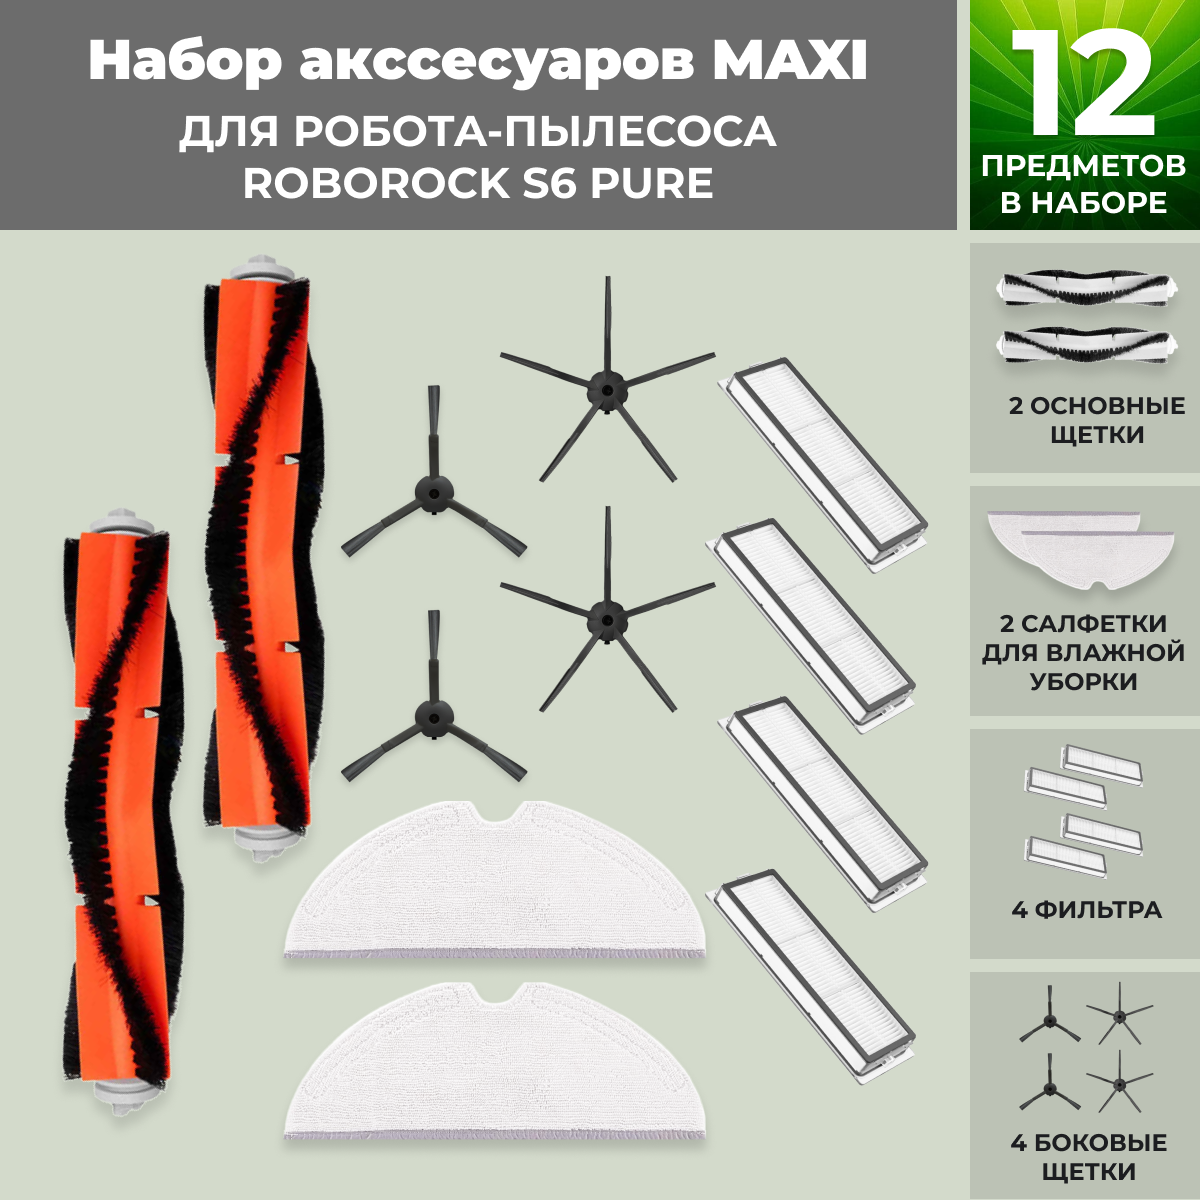 Набор аксессуаров Maxi для робота-пылесоса Roborock S6 Pure, черные боковые щетки 558695, фото 1